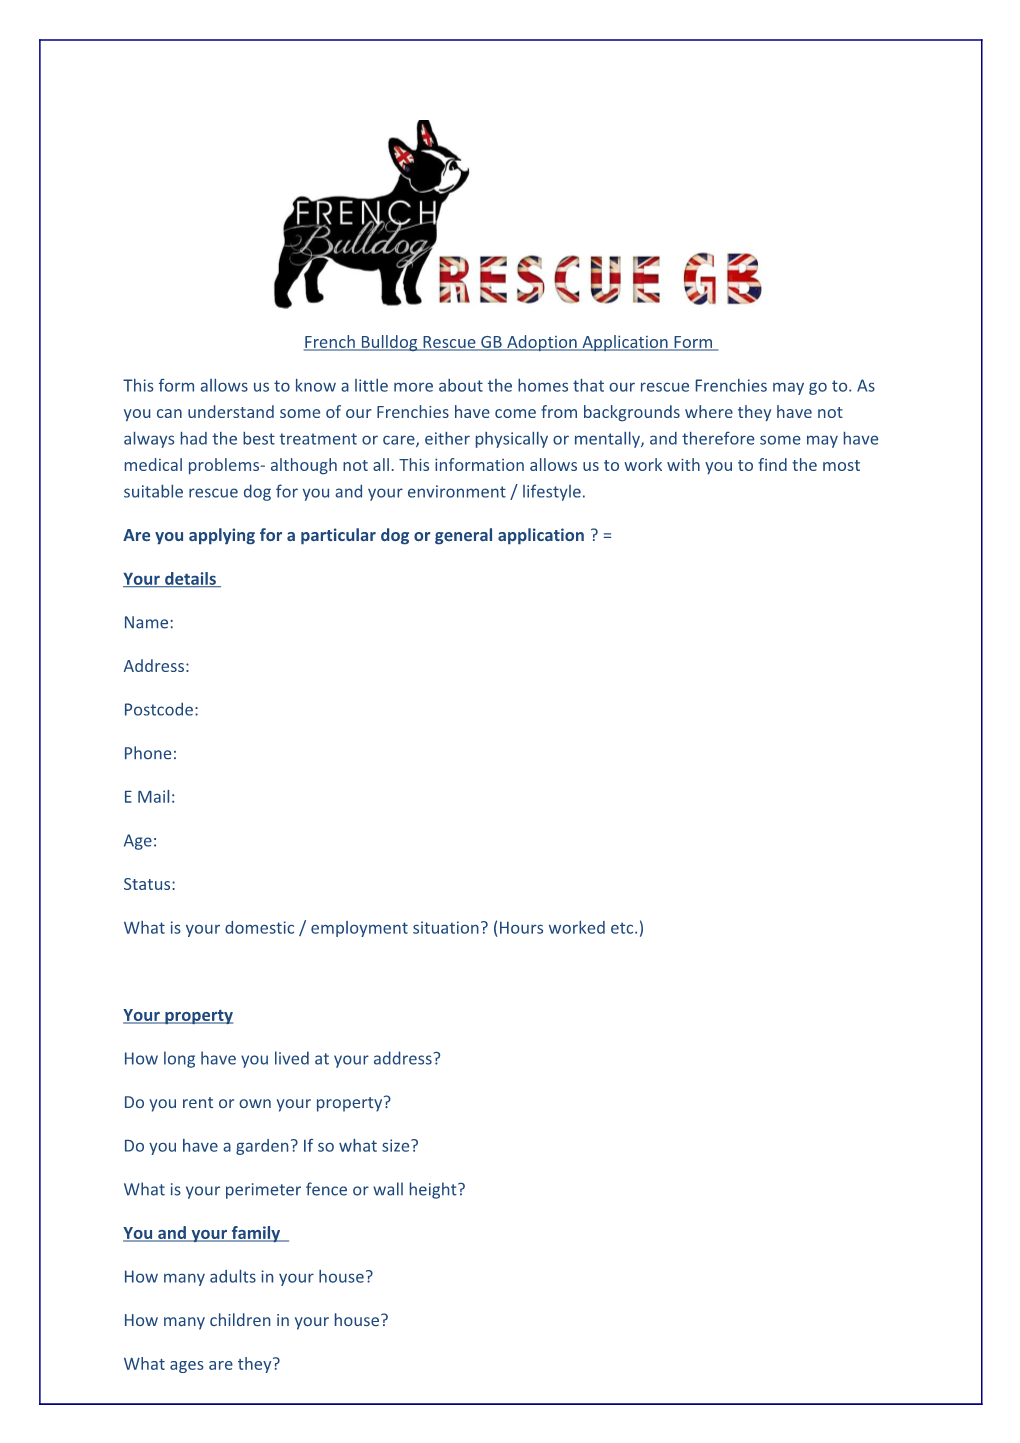 French Bulldog Rescue GB Adoption Application Form